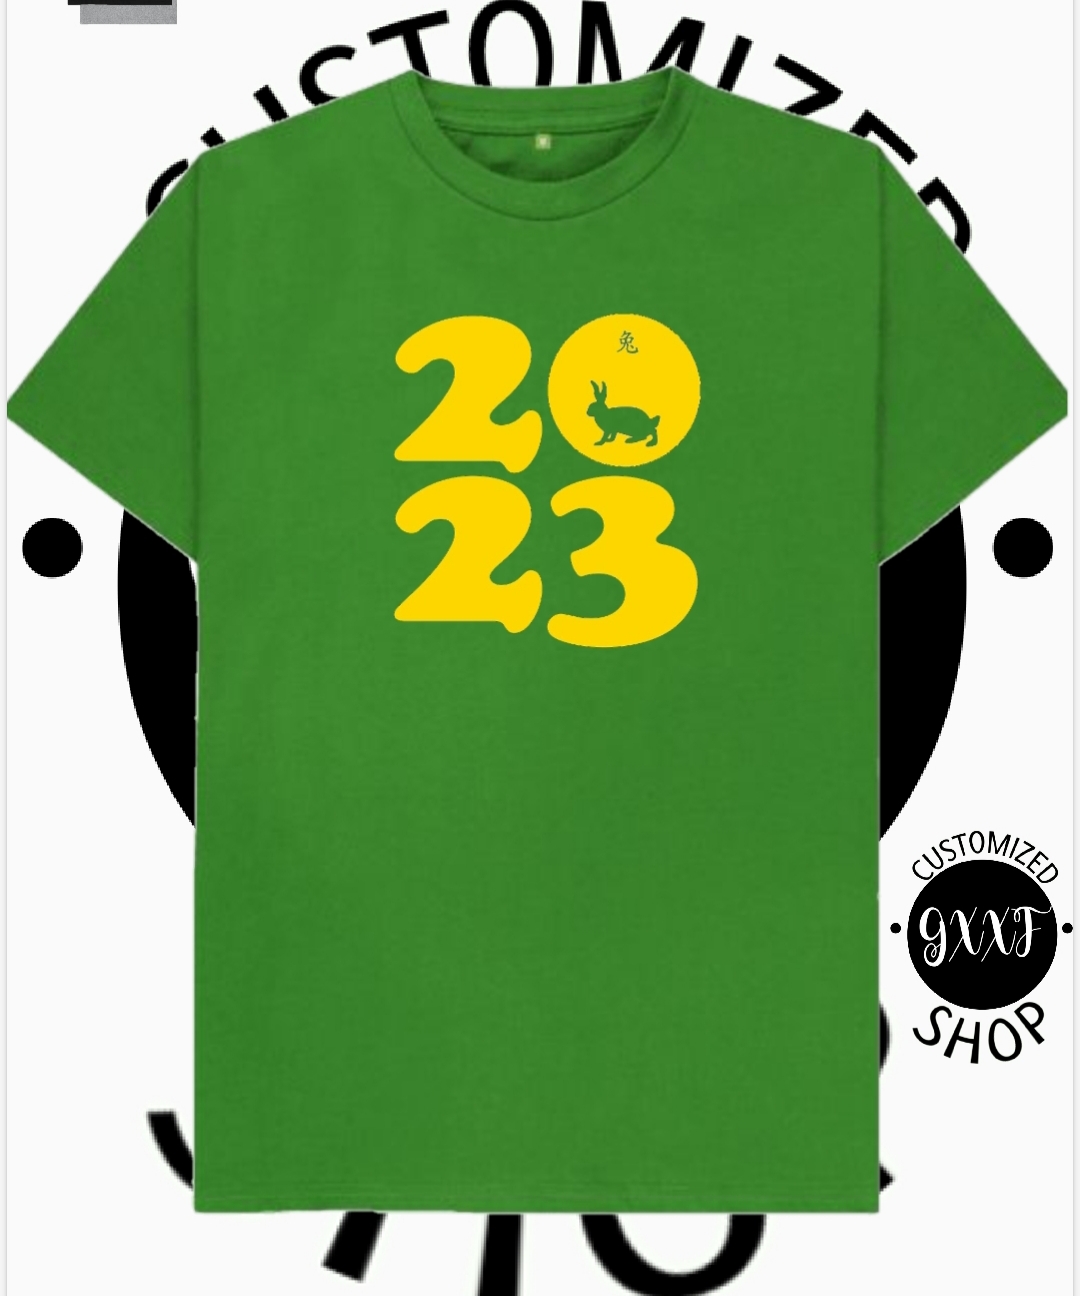 FANOSTUDIOS 2023 Rabbit Print T-shirt